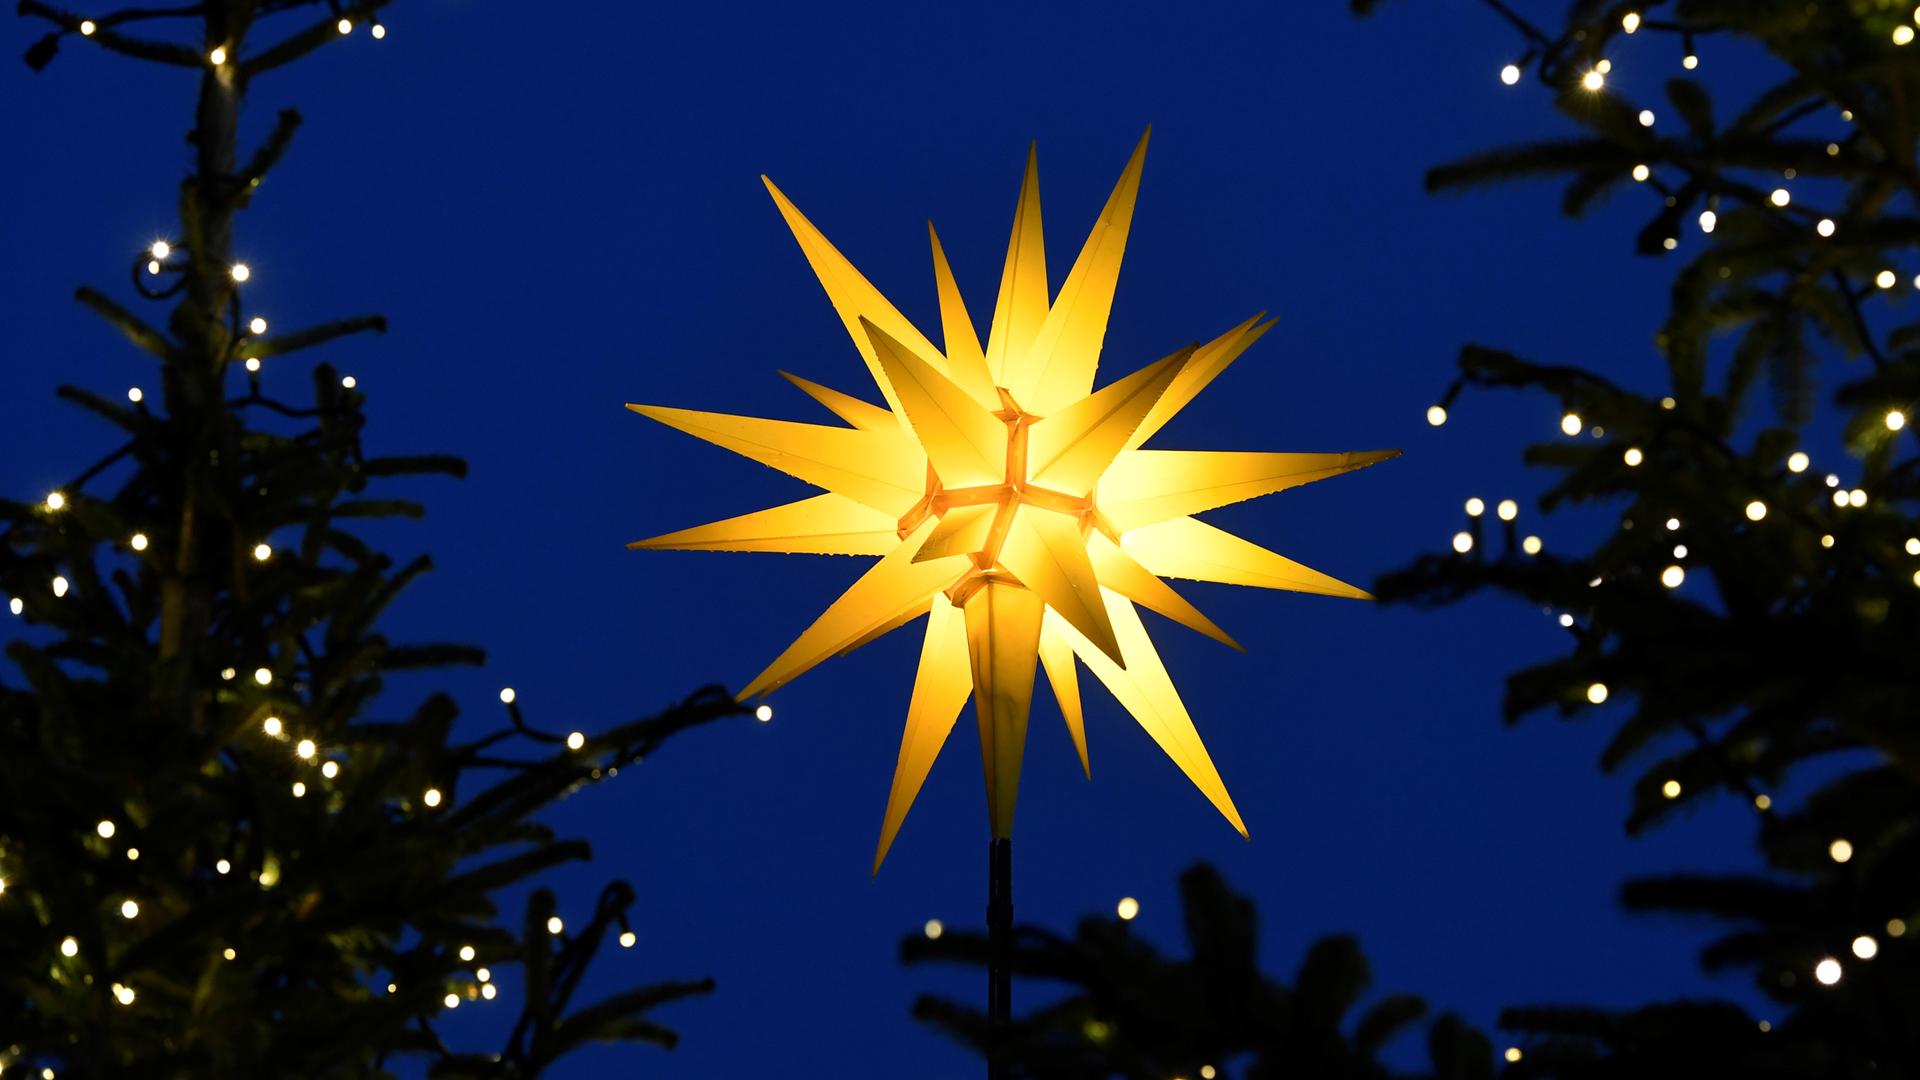 Das Bild zeigt einen Stern, der zwischen zwei mit Lichterketten geschmückten Tannen aufragt. 